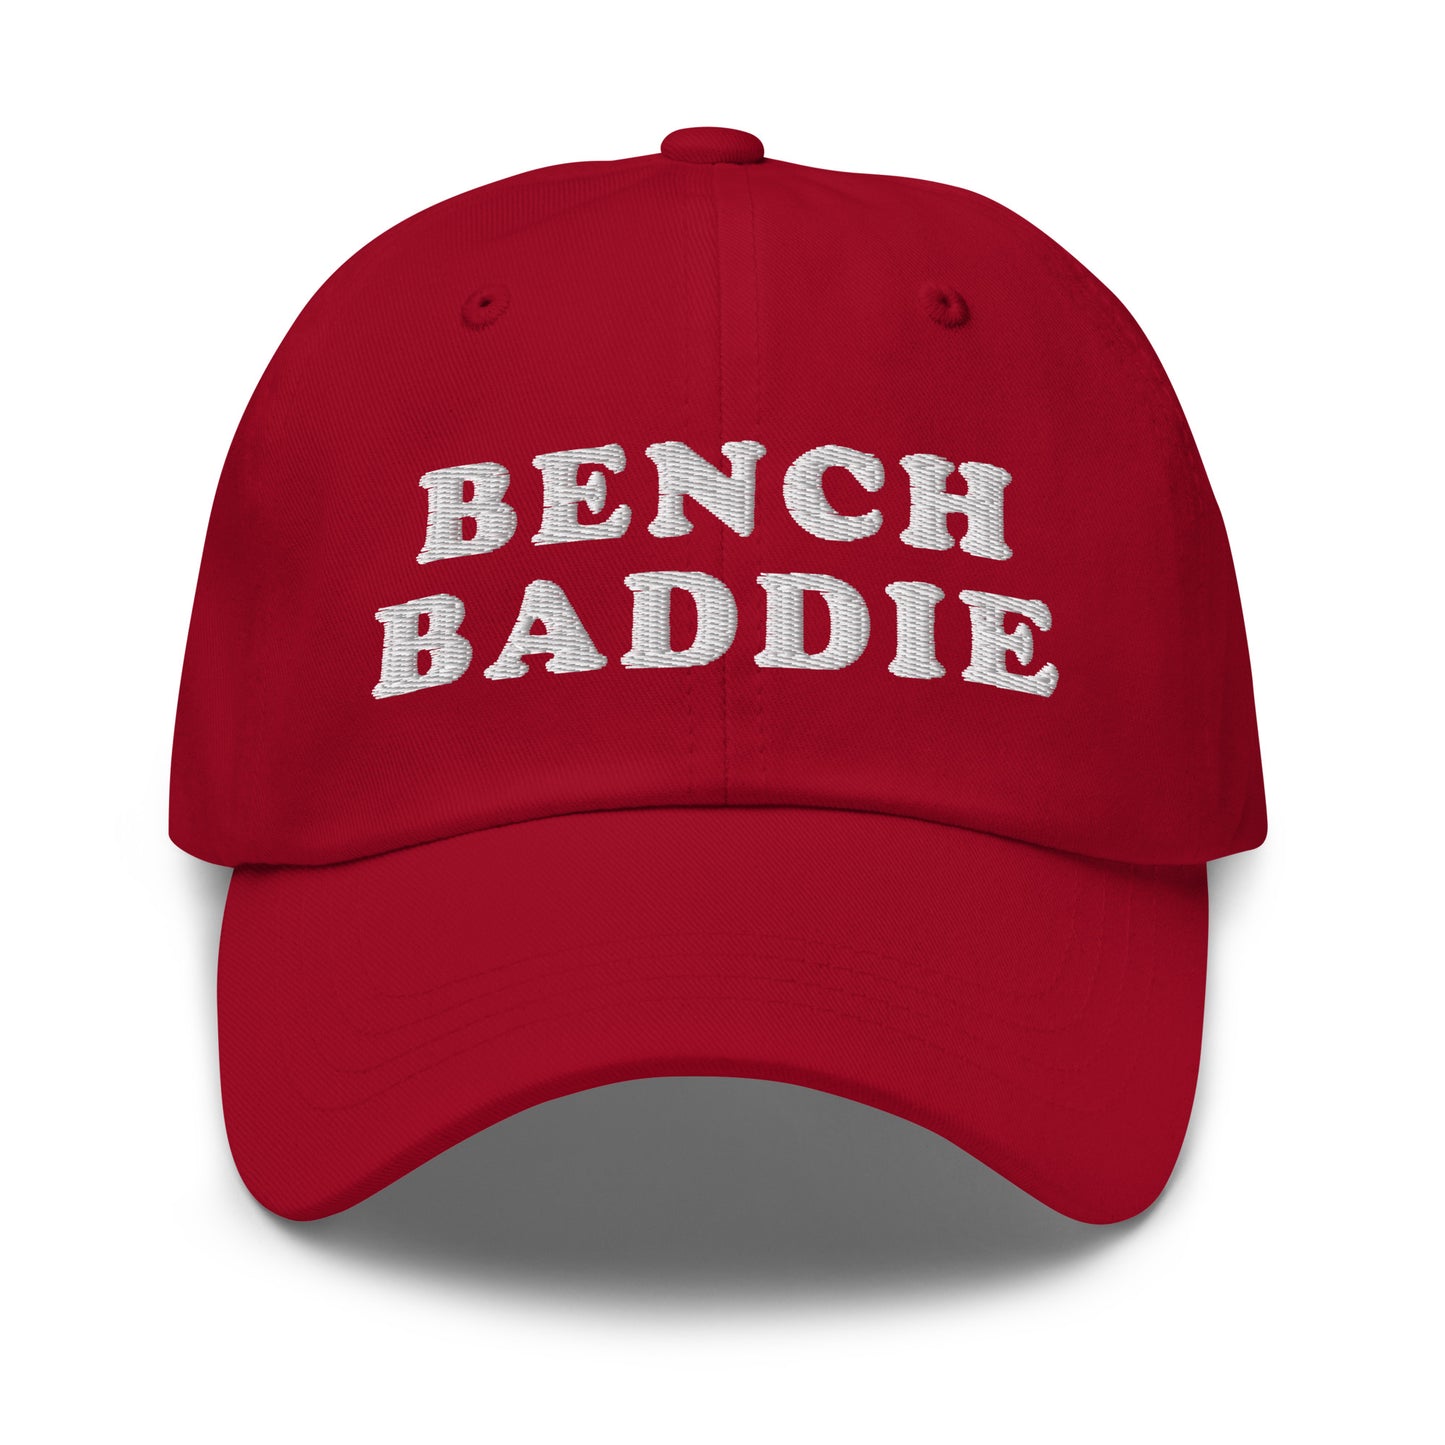 Bench Baddie hat